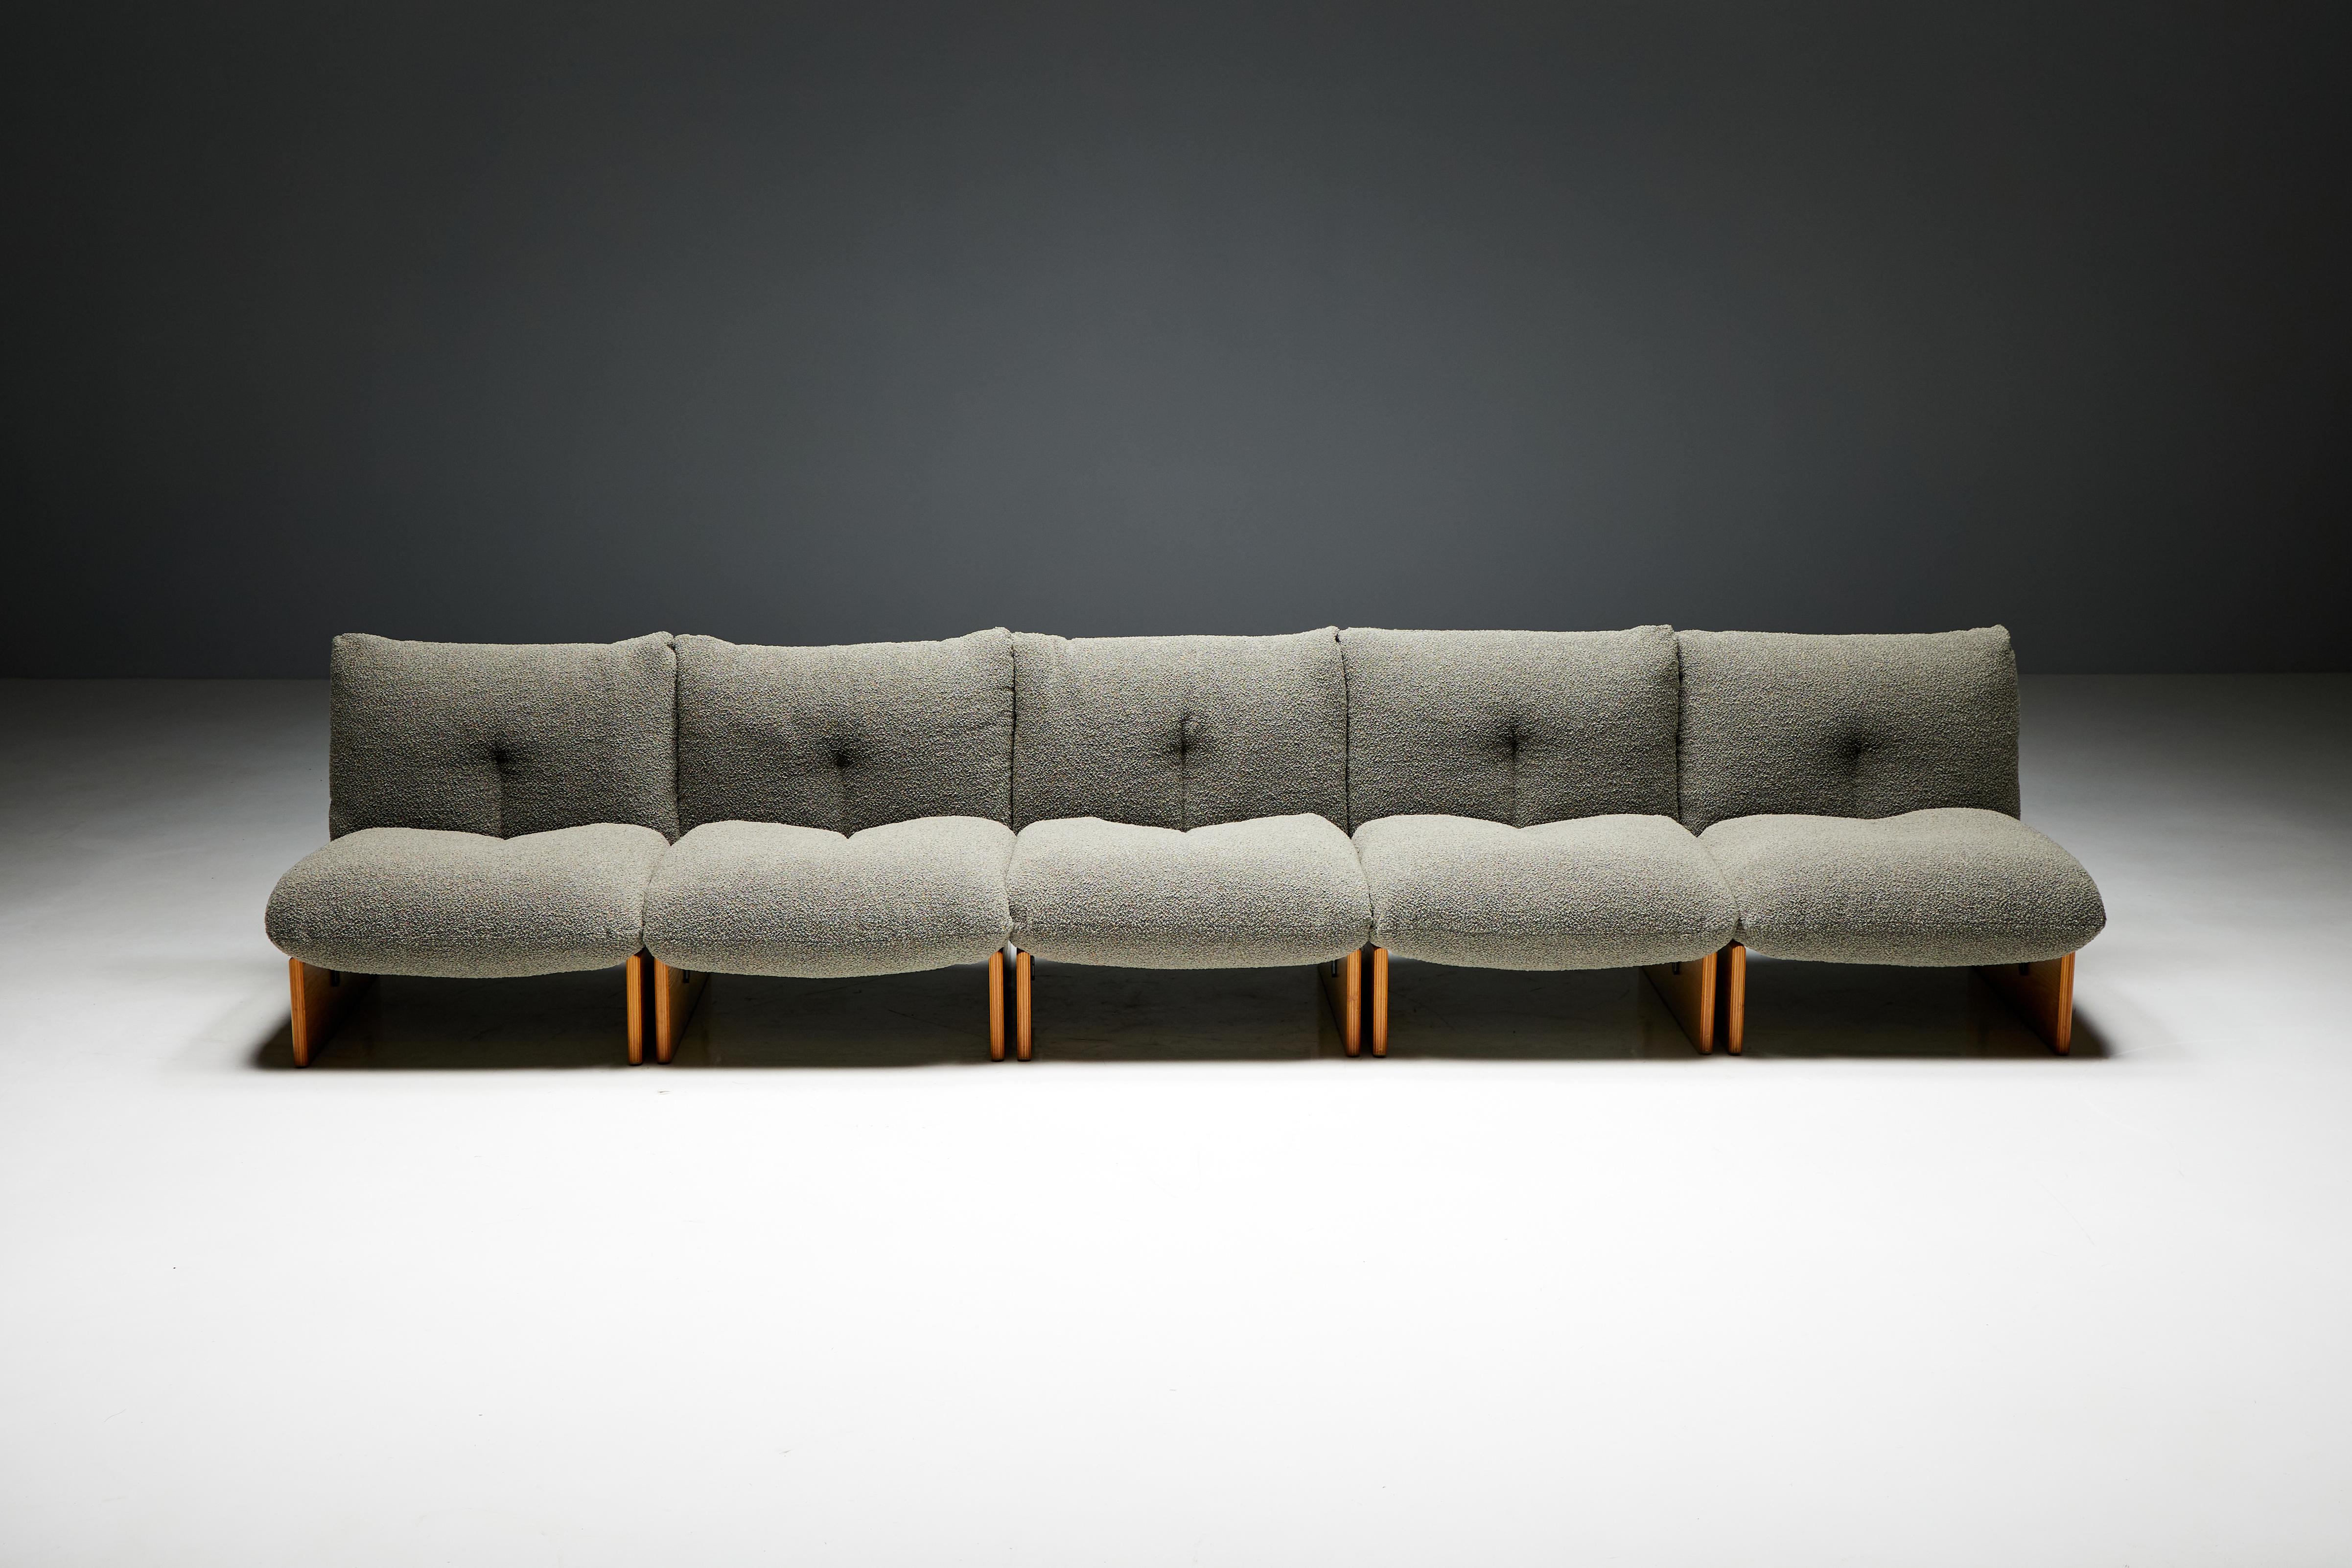 Chaises longues modulaires Arflex, attribuées au visionnaire Tito Agnoli à l'époque emblématique du design du milieu du siècle, vers les années 1970 en Italie. Cet ensemble de chaises longues se compose de cinq modules individuels, dont l'assise et